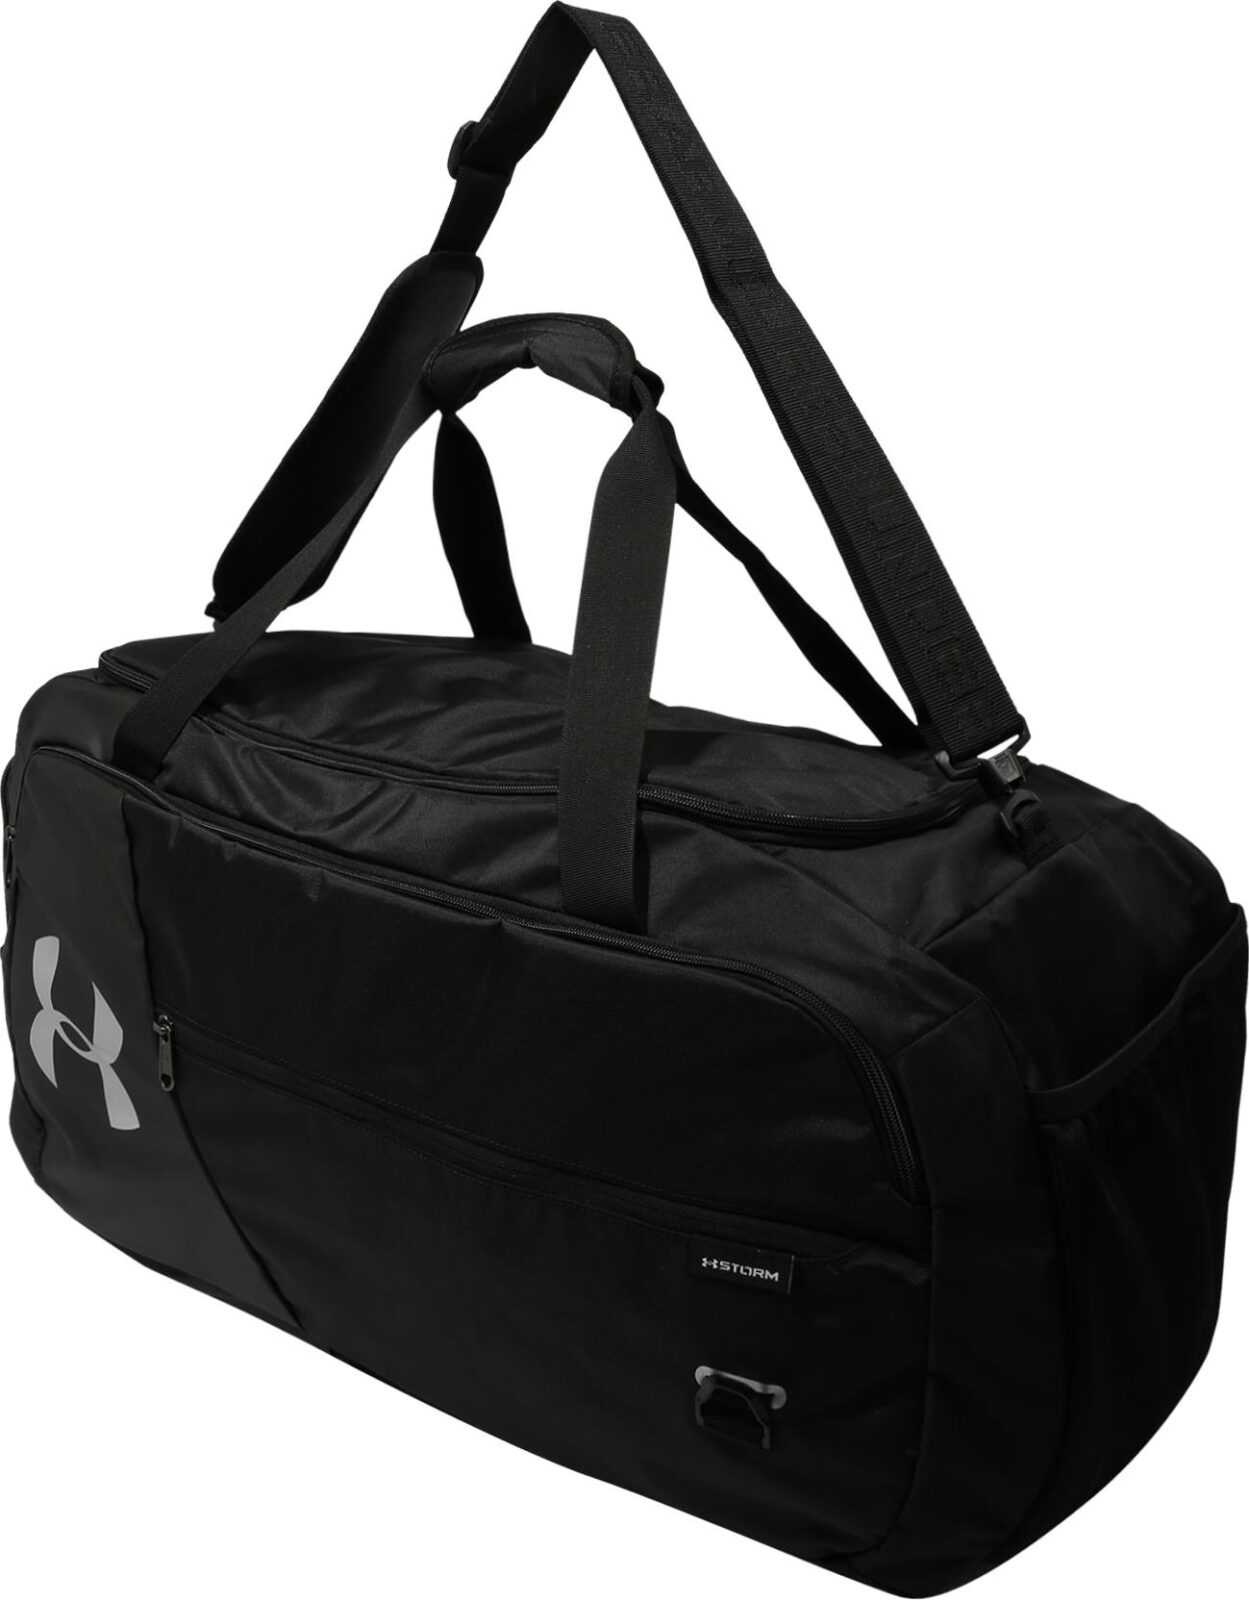 UNDER ARMOUR Sportovní taška 'Undeniable 4.0' černá / stříbrná